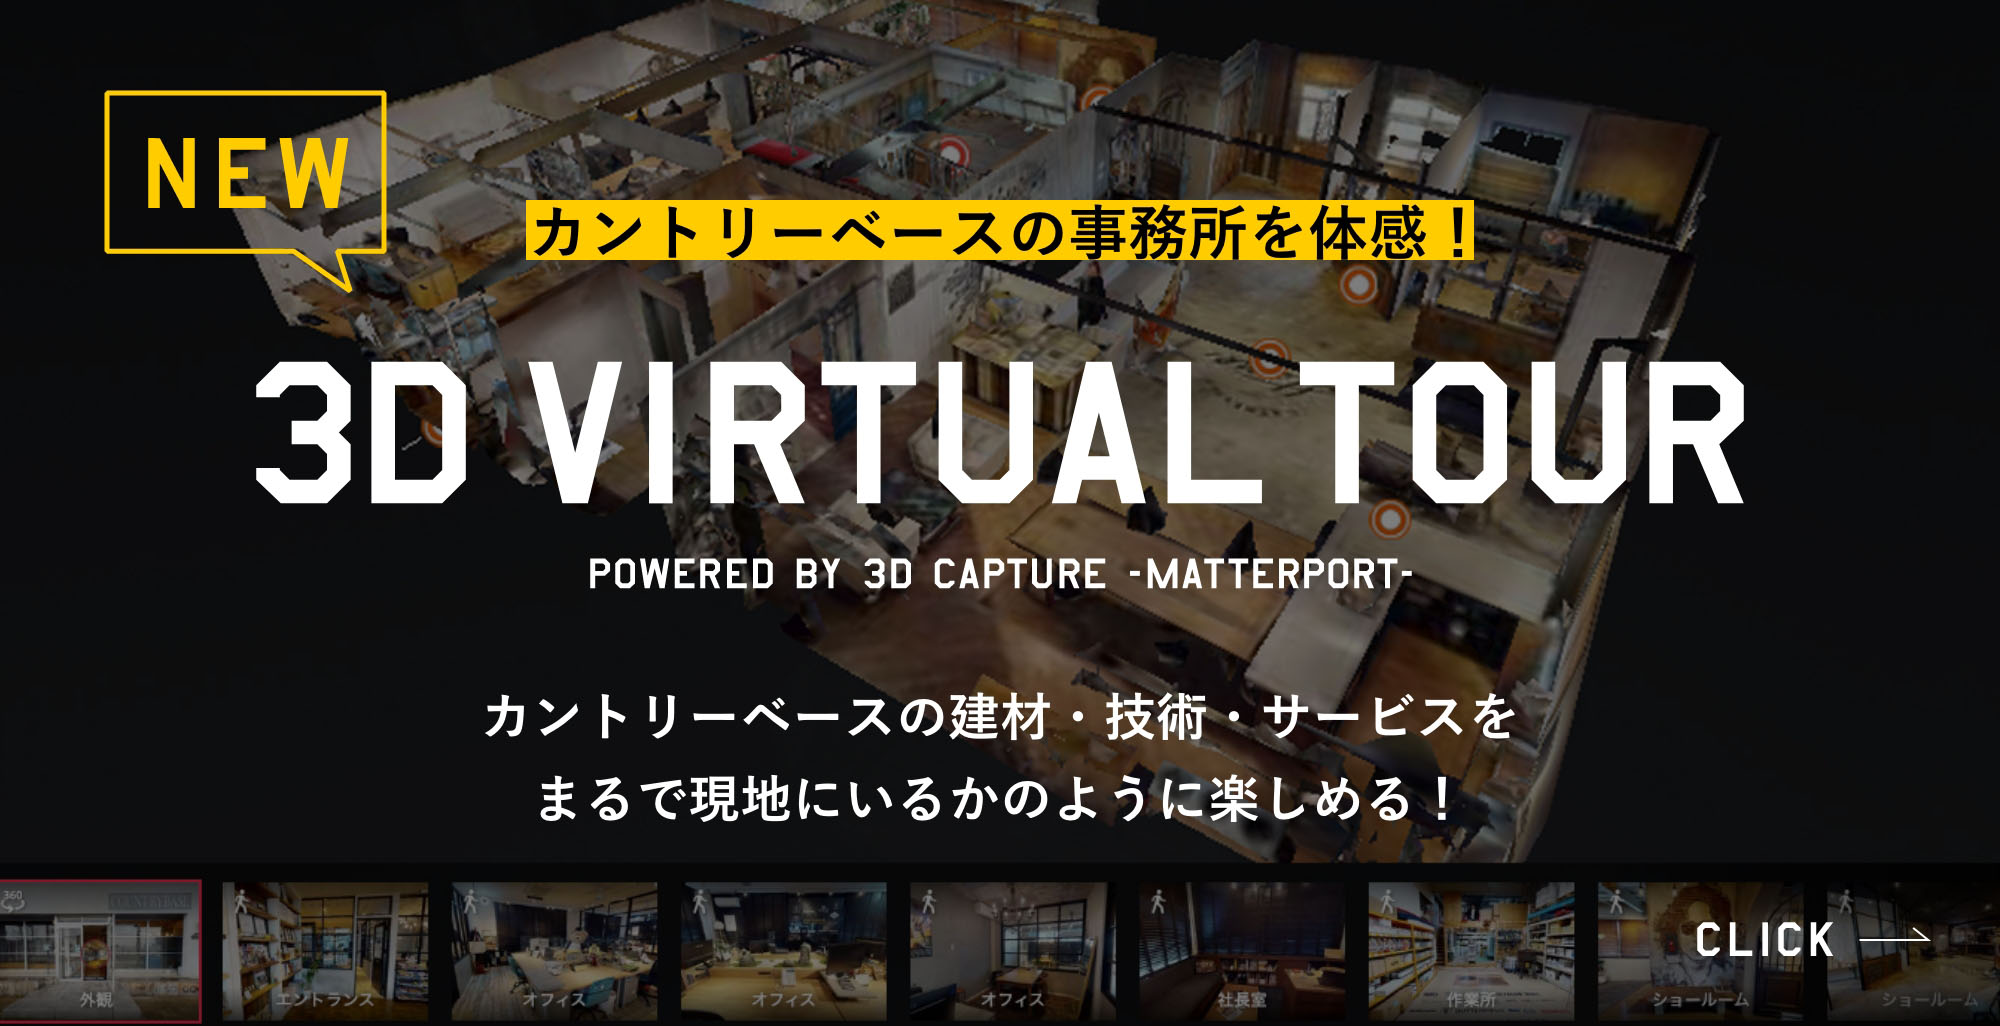 3D VIRTUAL TOUR